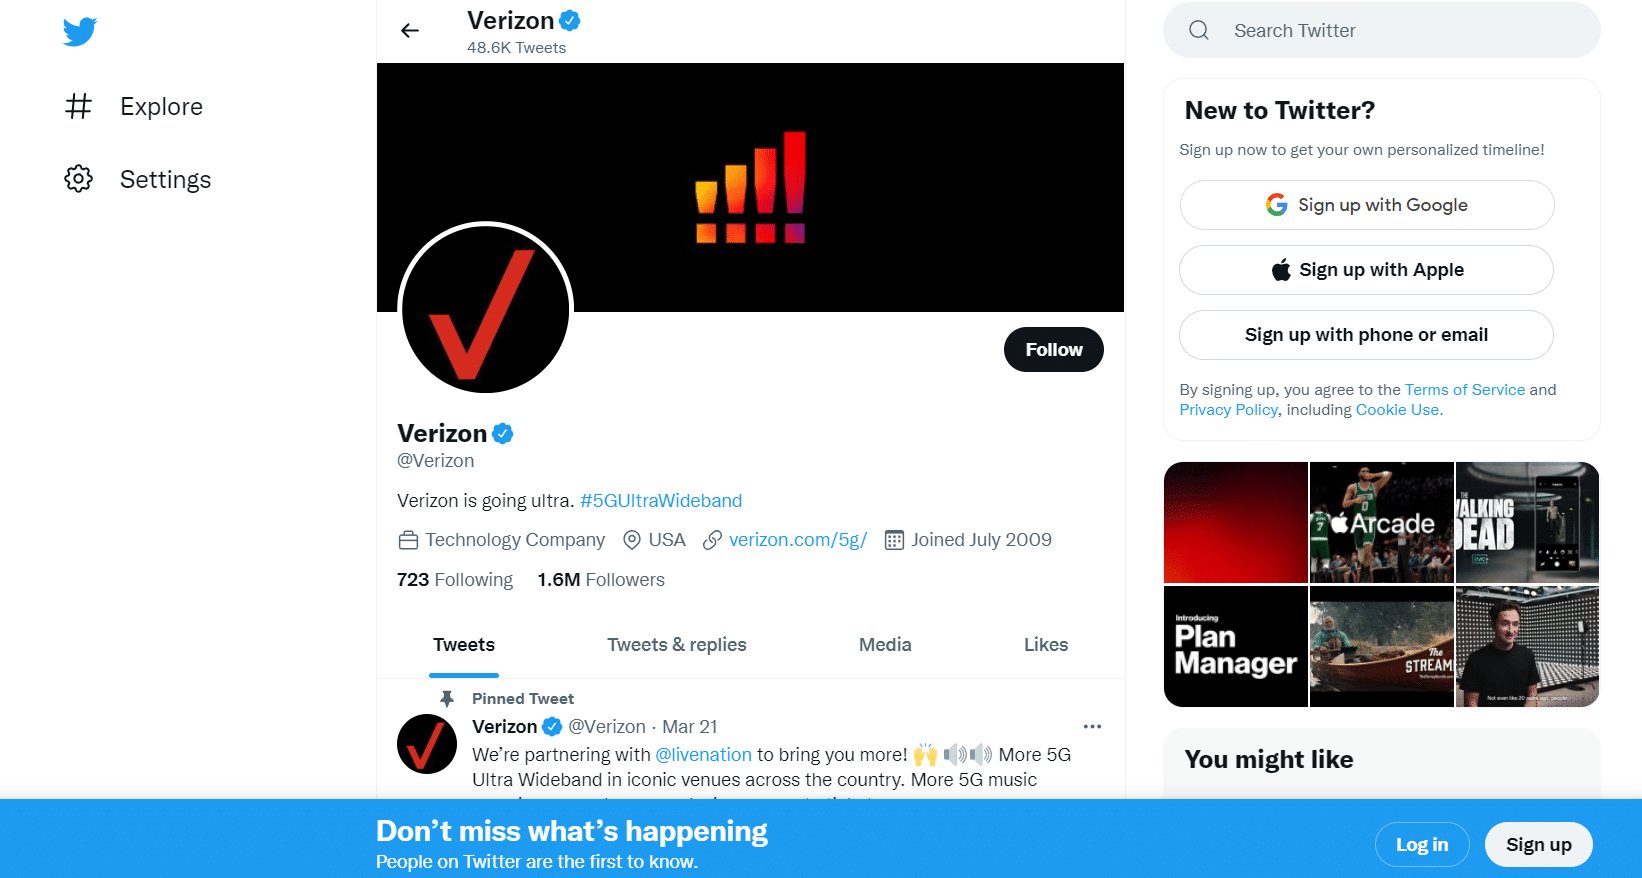 Pagina Twitter di Verizon. come parlare con una persona quando chiami Verizon